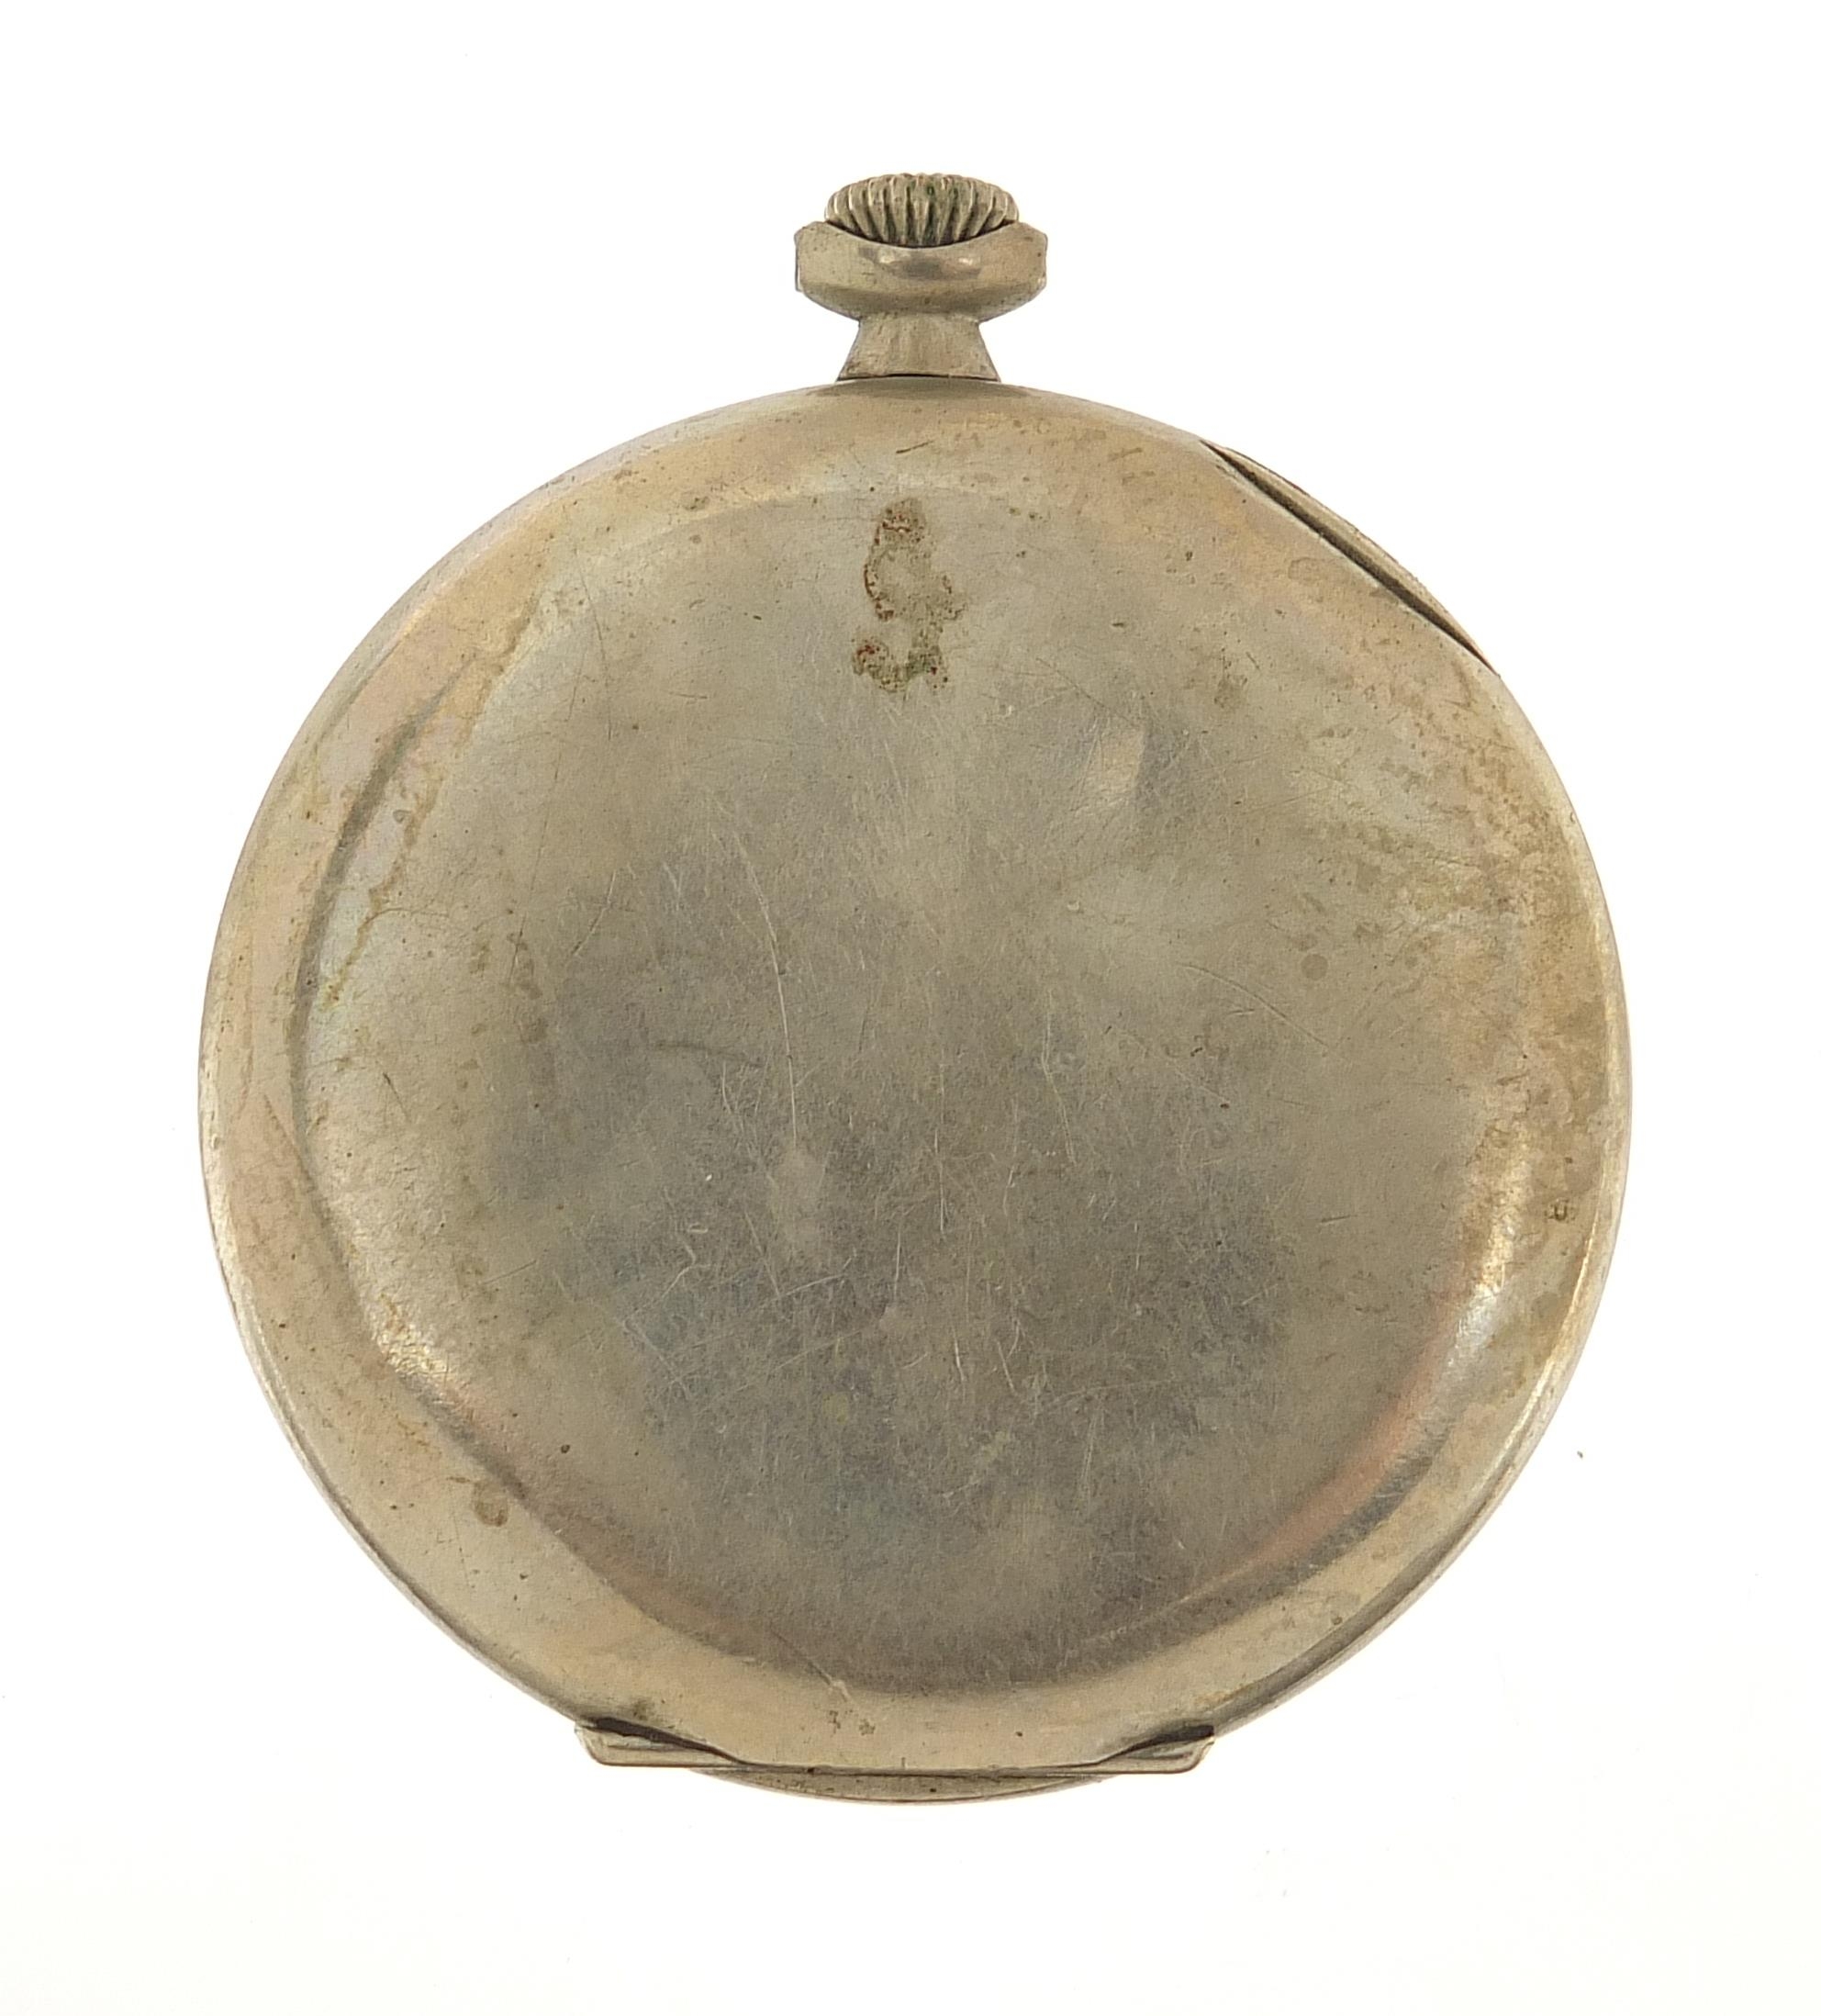 Victoria, gentlemen's open face pocket watch, the case numbered 217964 5902, 48mm in diameter - Image 2 of 4